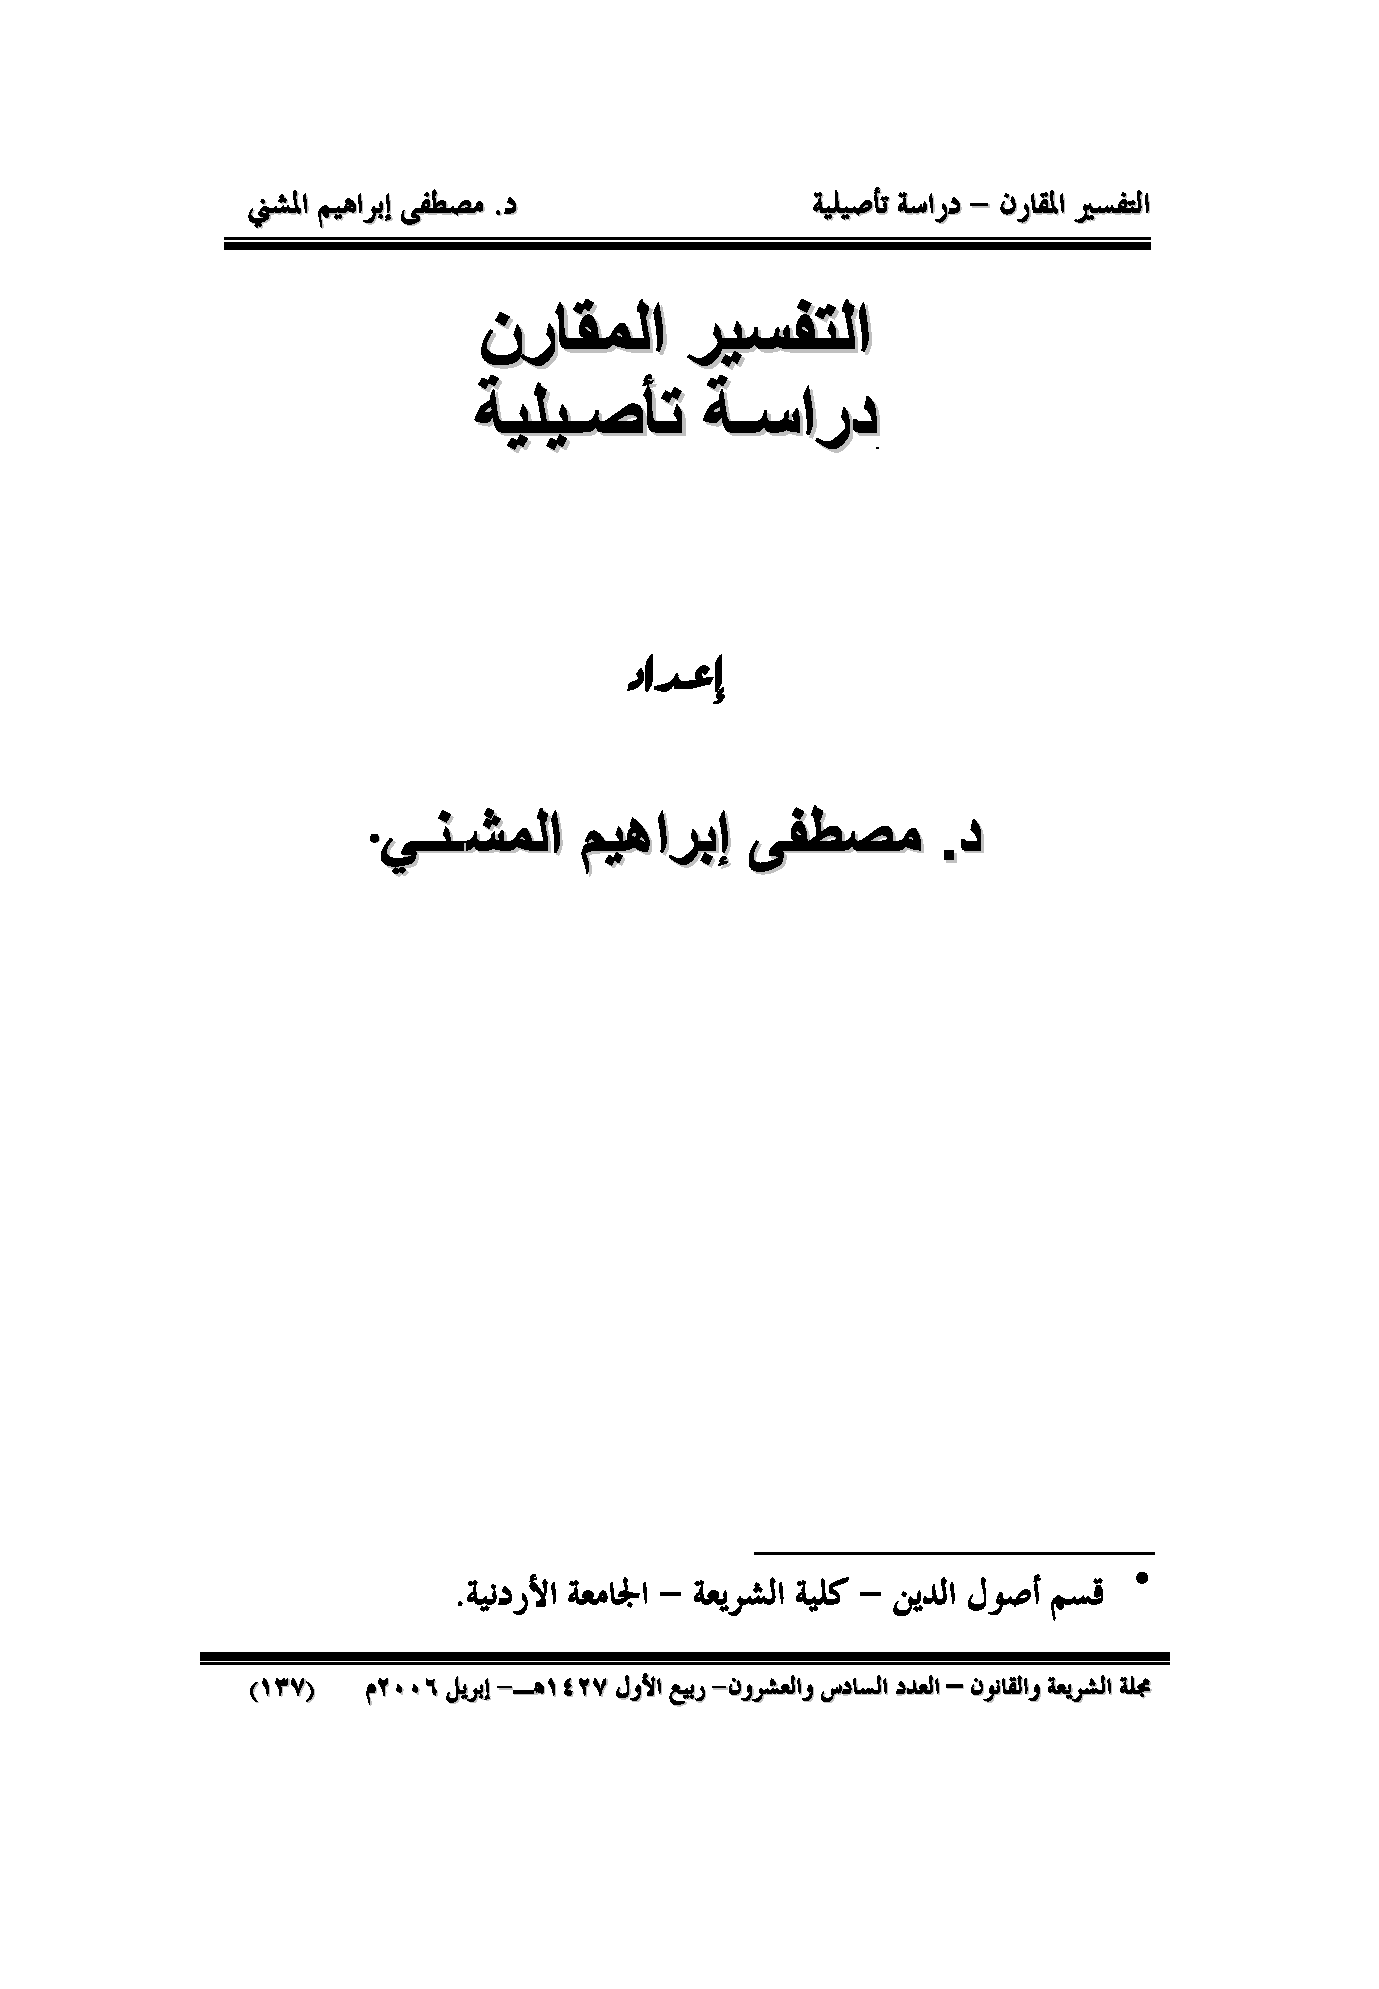 تحميل كتاب التفسير المقارن (دراسة تأصيلية) للمؤلف: الدكتور مصطفى إبراهيم خليل المشني